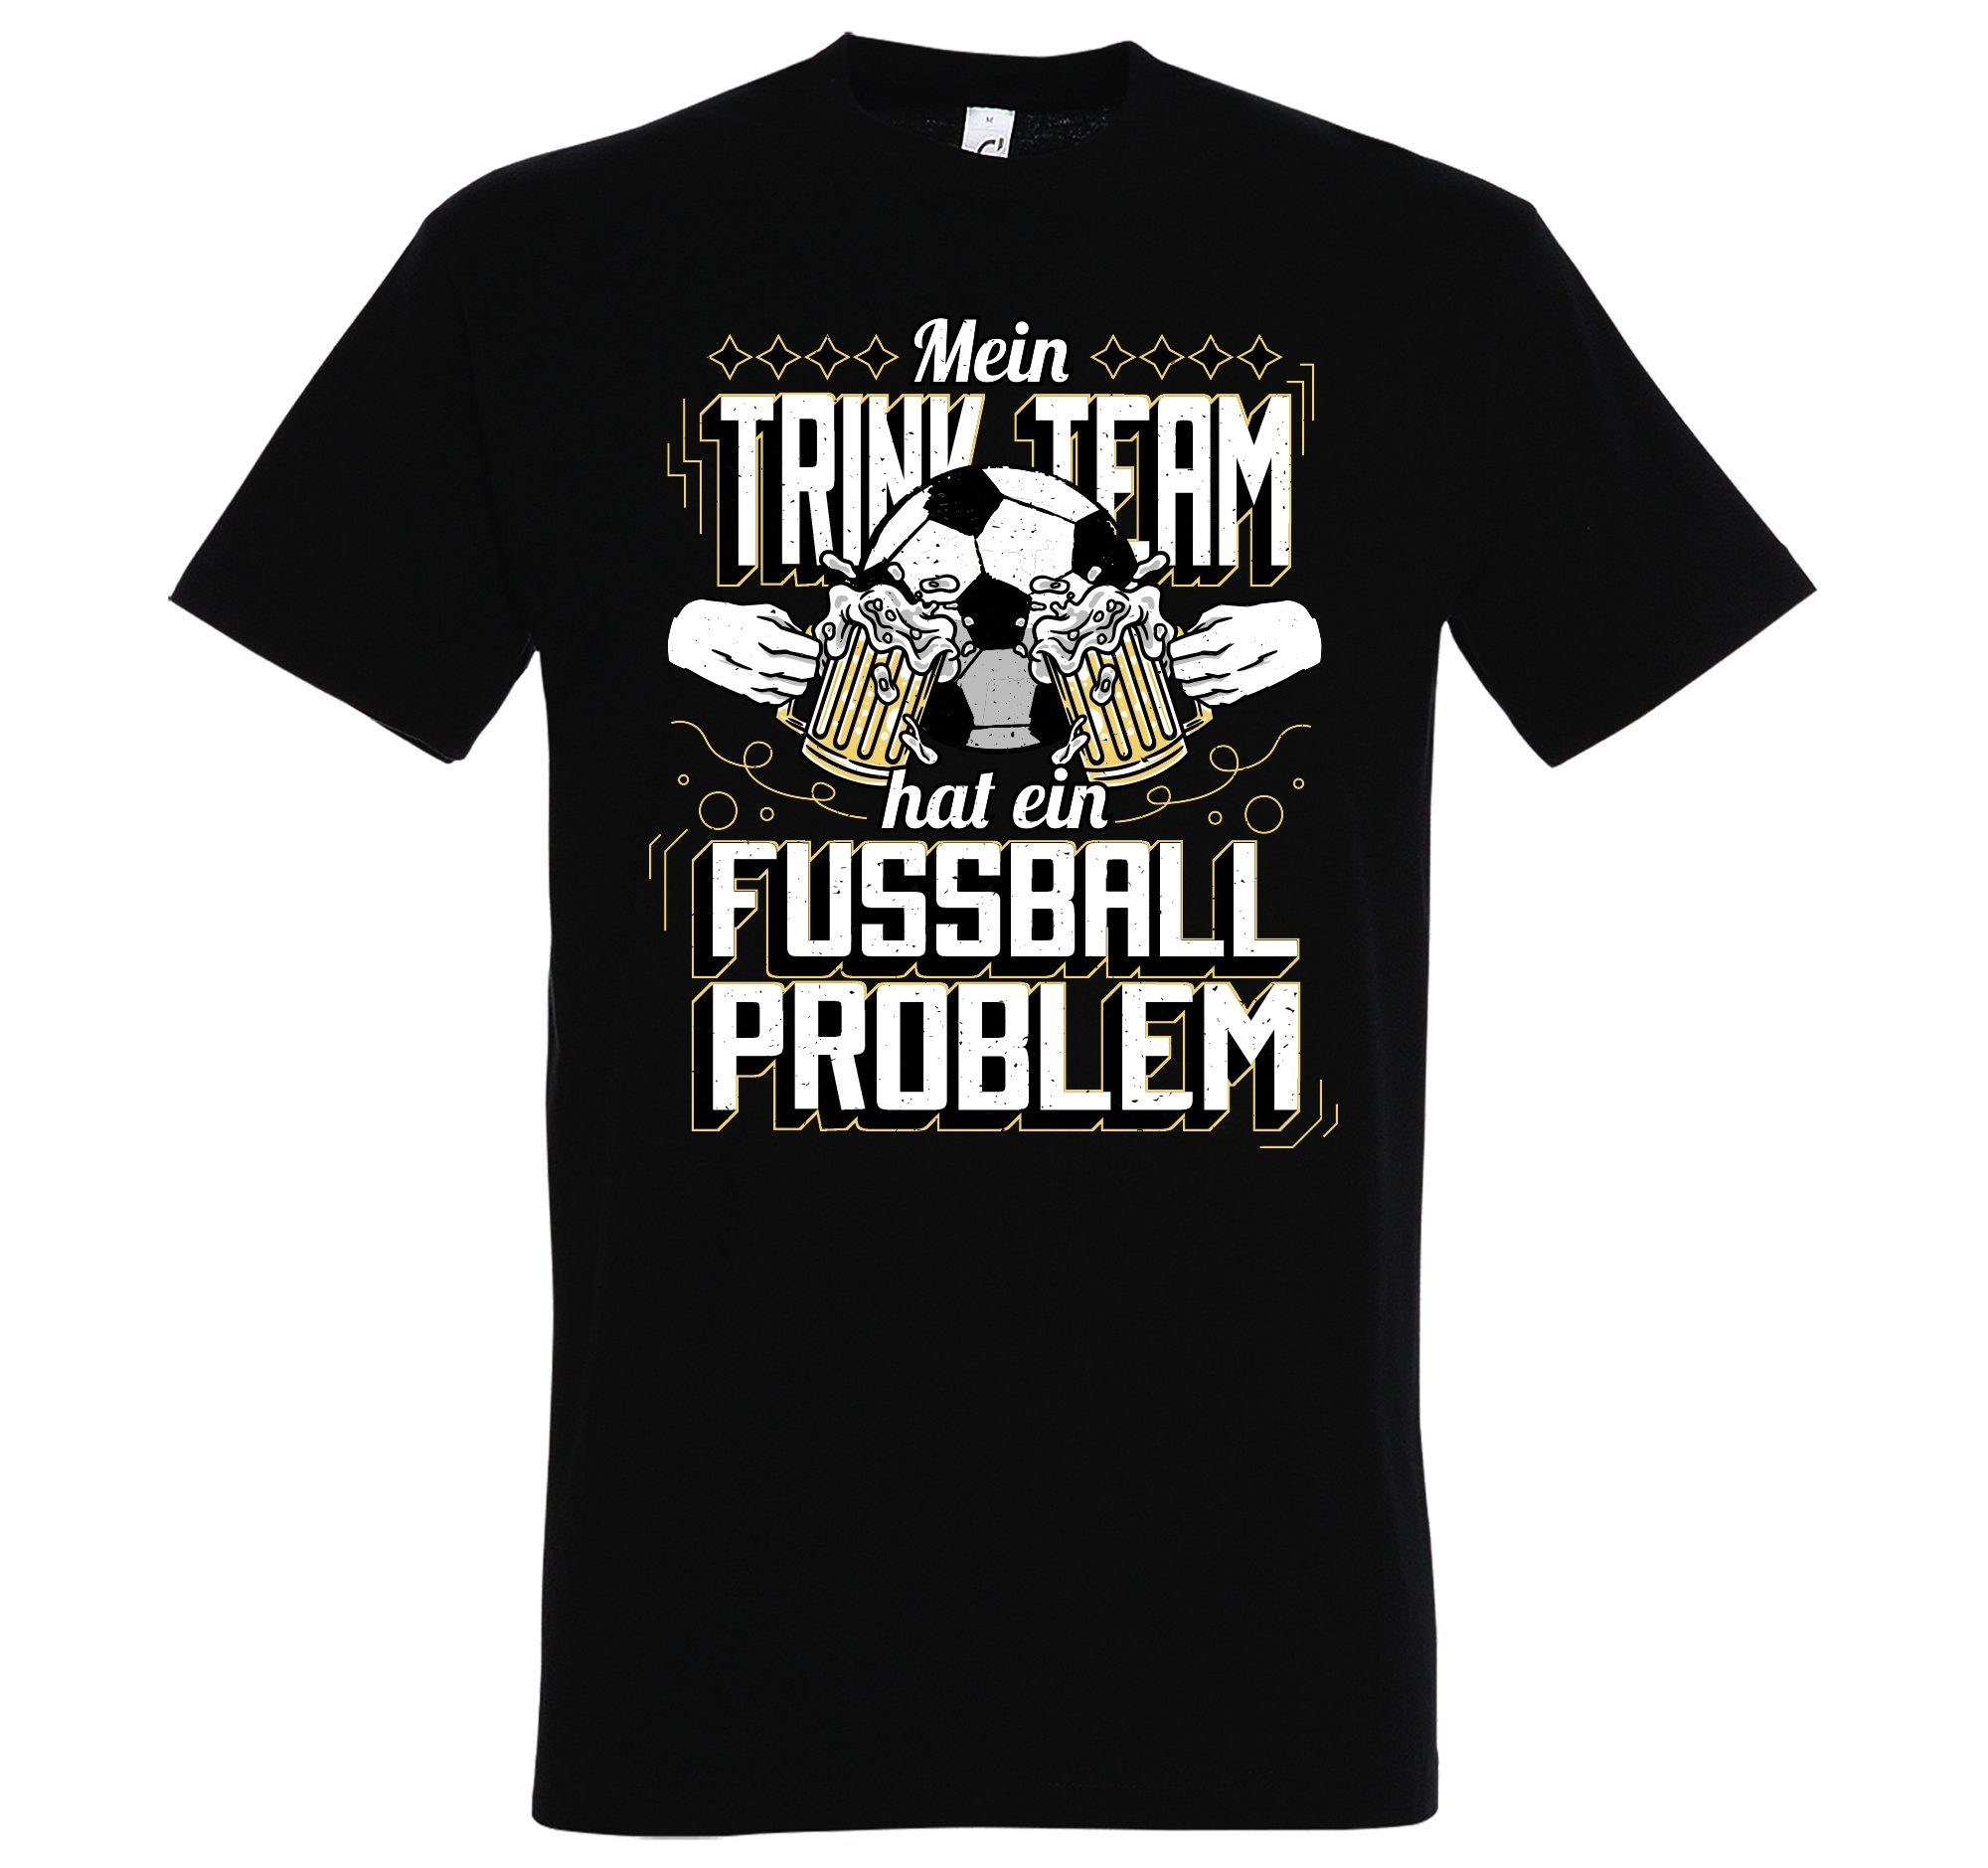 Problem" Youth Shirt T-Shirt "Mein Frontprint Schwarz Ein Herren trendigem Designz Fußball Trinkteam Hat mit